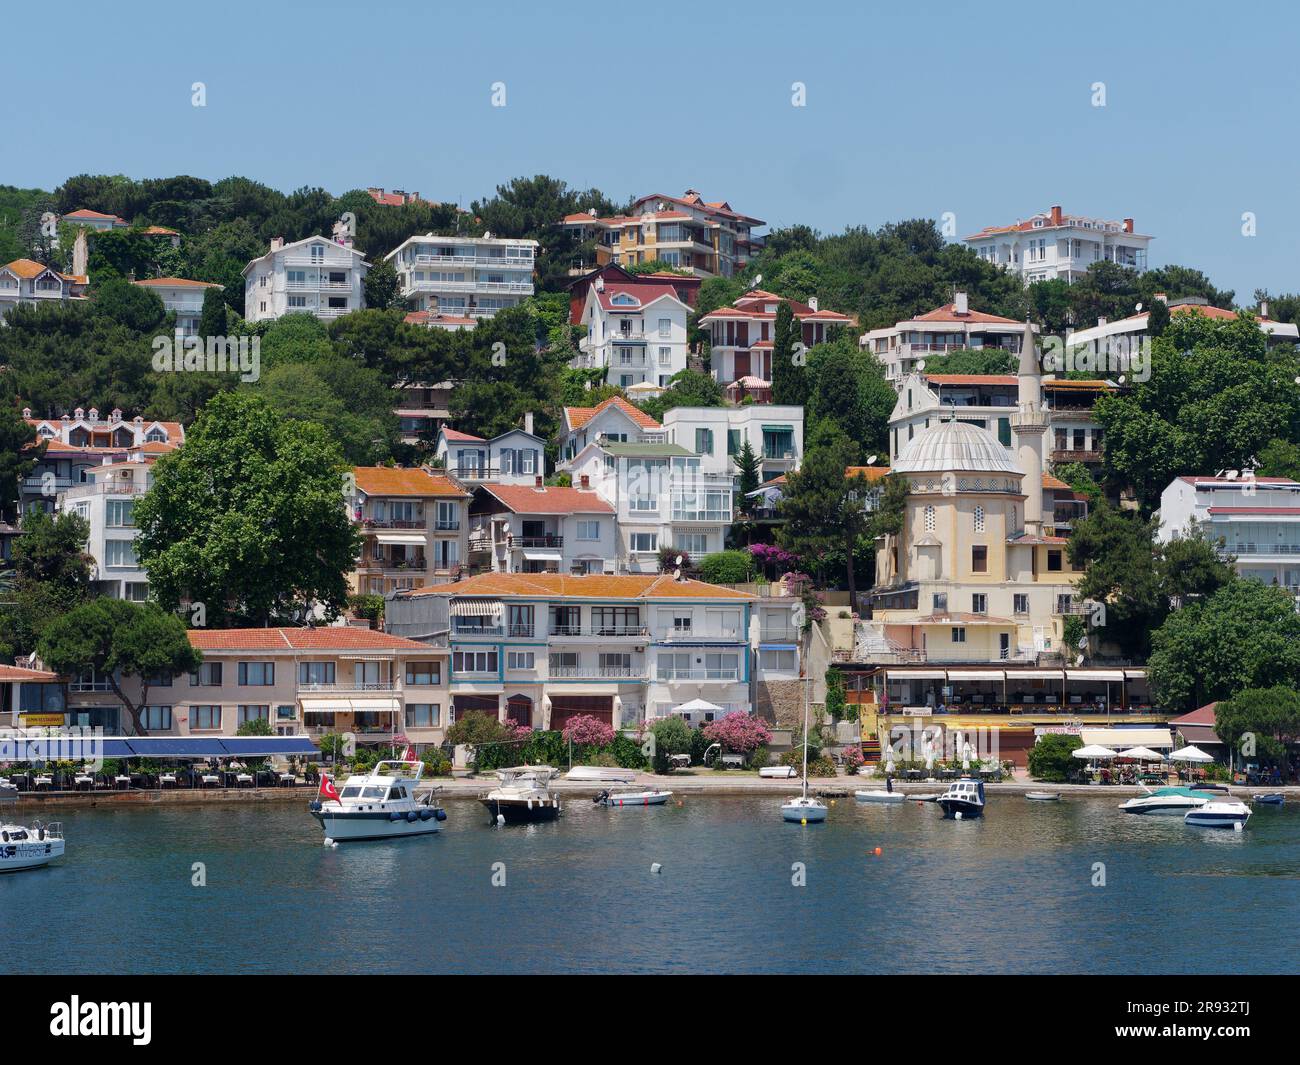 Direkt am Meer auf der Insel Burgaz, auch bekannt als Burgazada, eine der Prinzessin-Inseln im Marmarameer, in der Nähe von Istanbul, Türkei. Querformat. Stockfoto